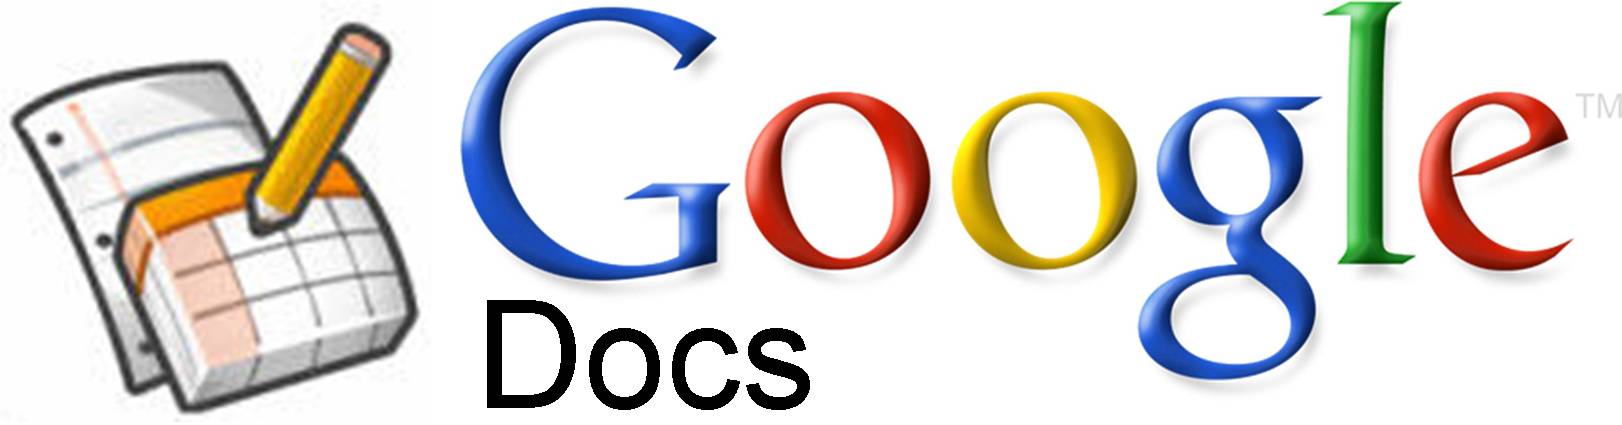 Гуглдок. Google документы. Google документы картинки. Гугл ДОКС логотип. Гугл документы лого.